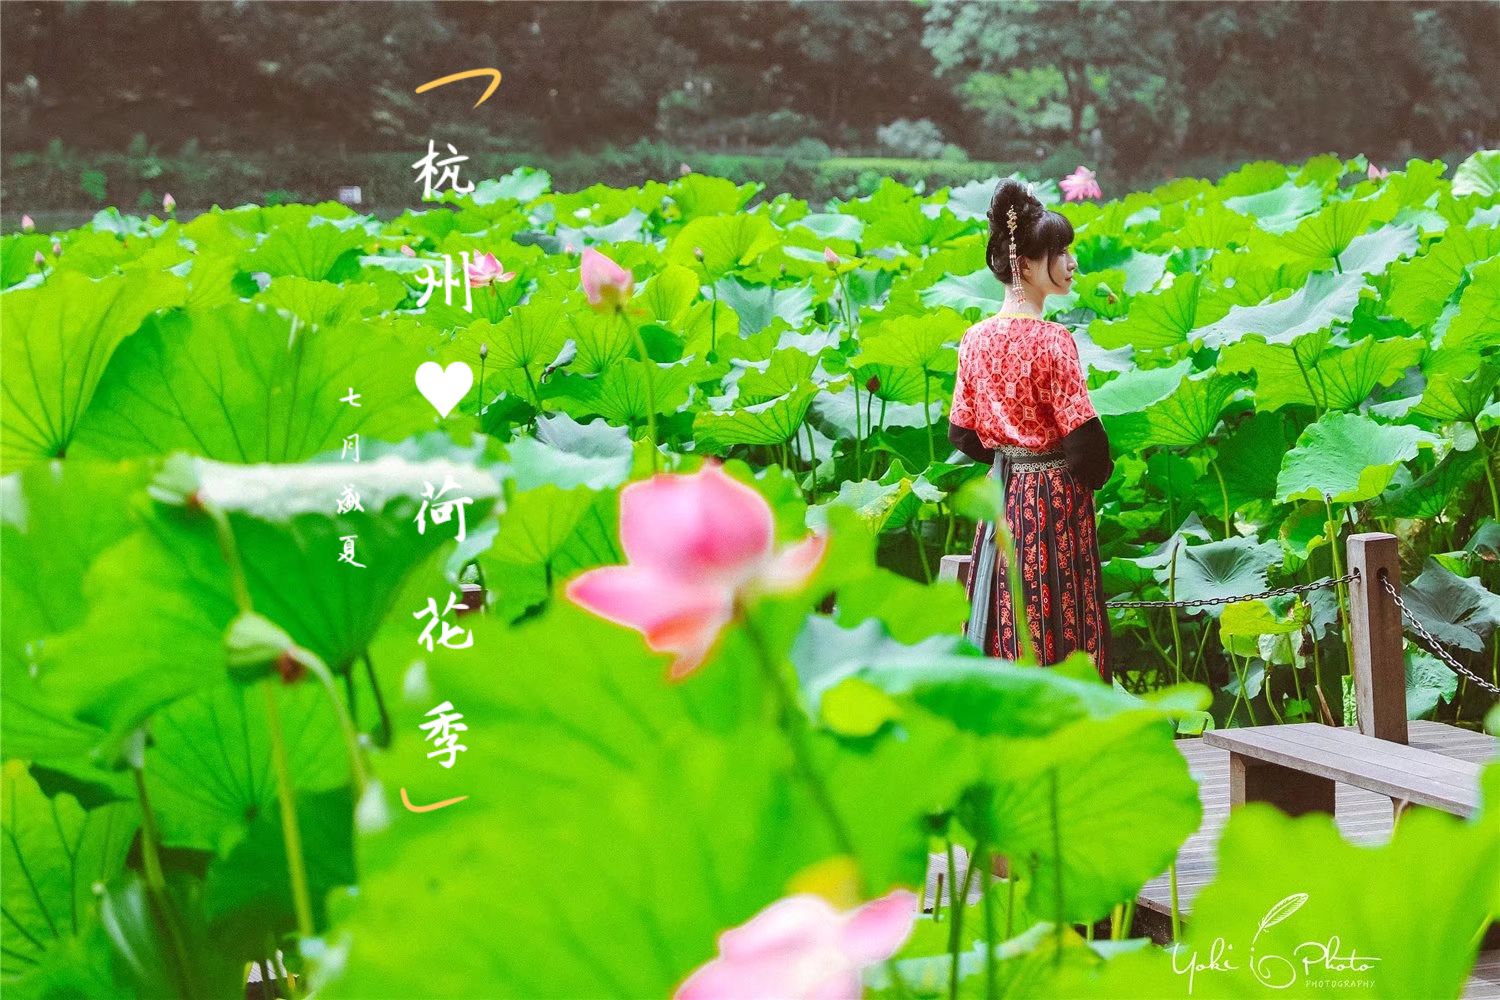 每年一入夏，醉人的西子湖展开了一幅“”接天莲叶无穷碧，映日荷花别样红的画卷。杭州四季皆美，夏季尤为娇